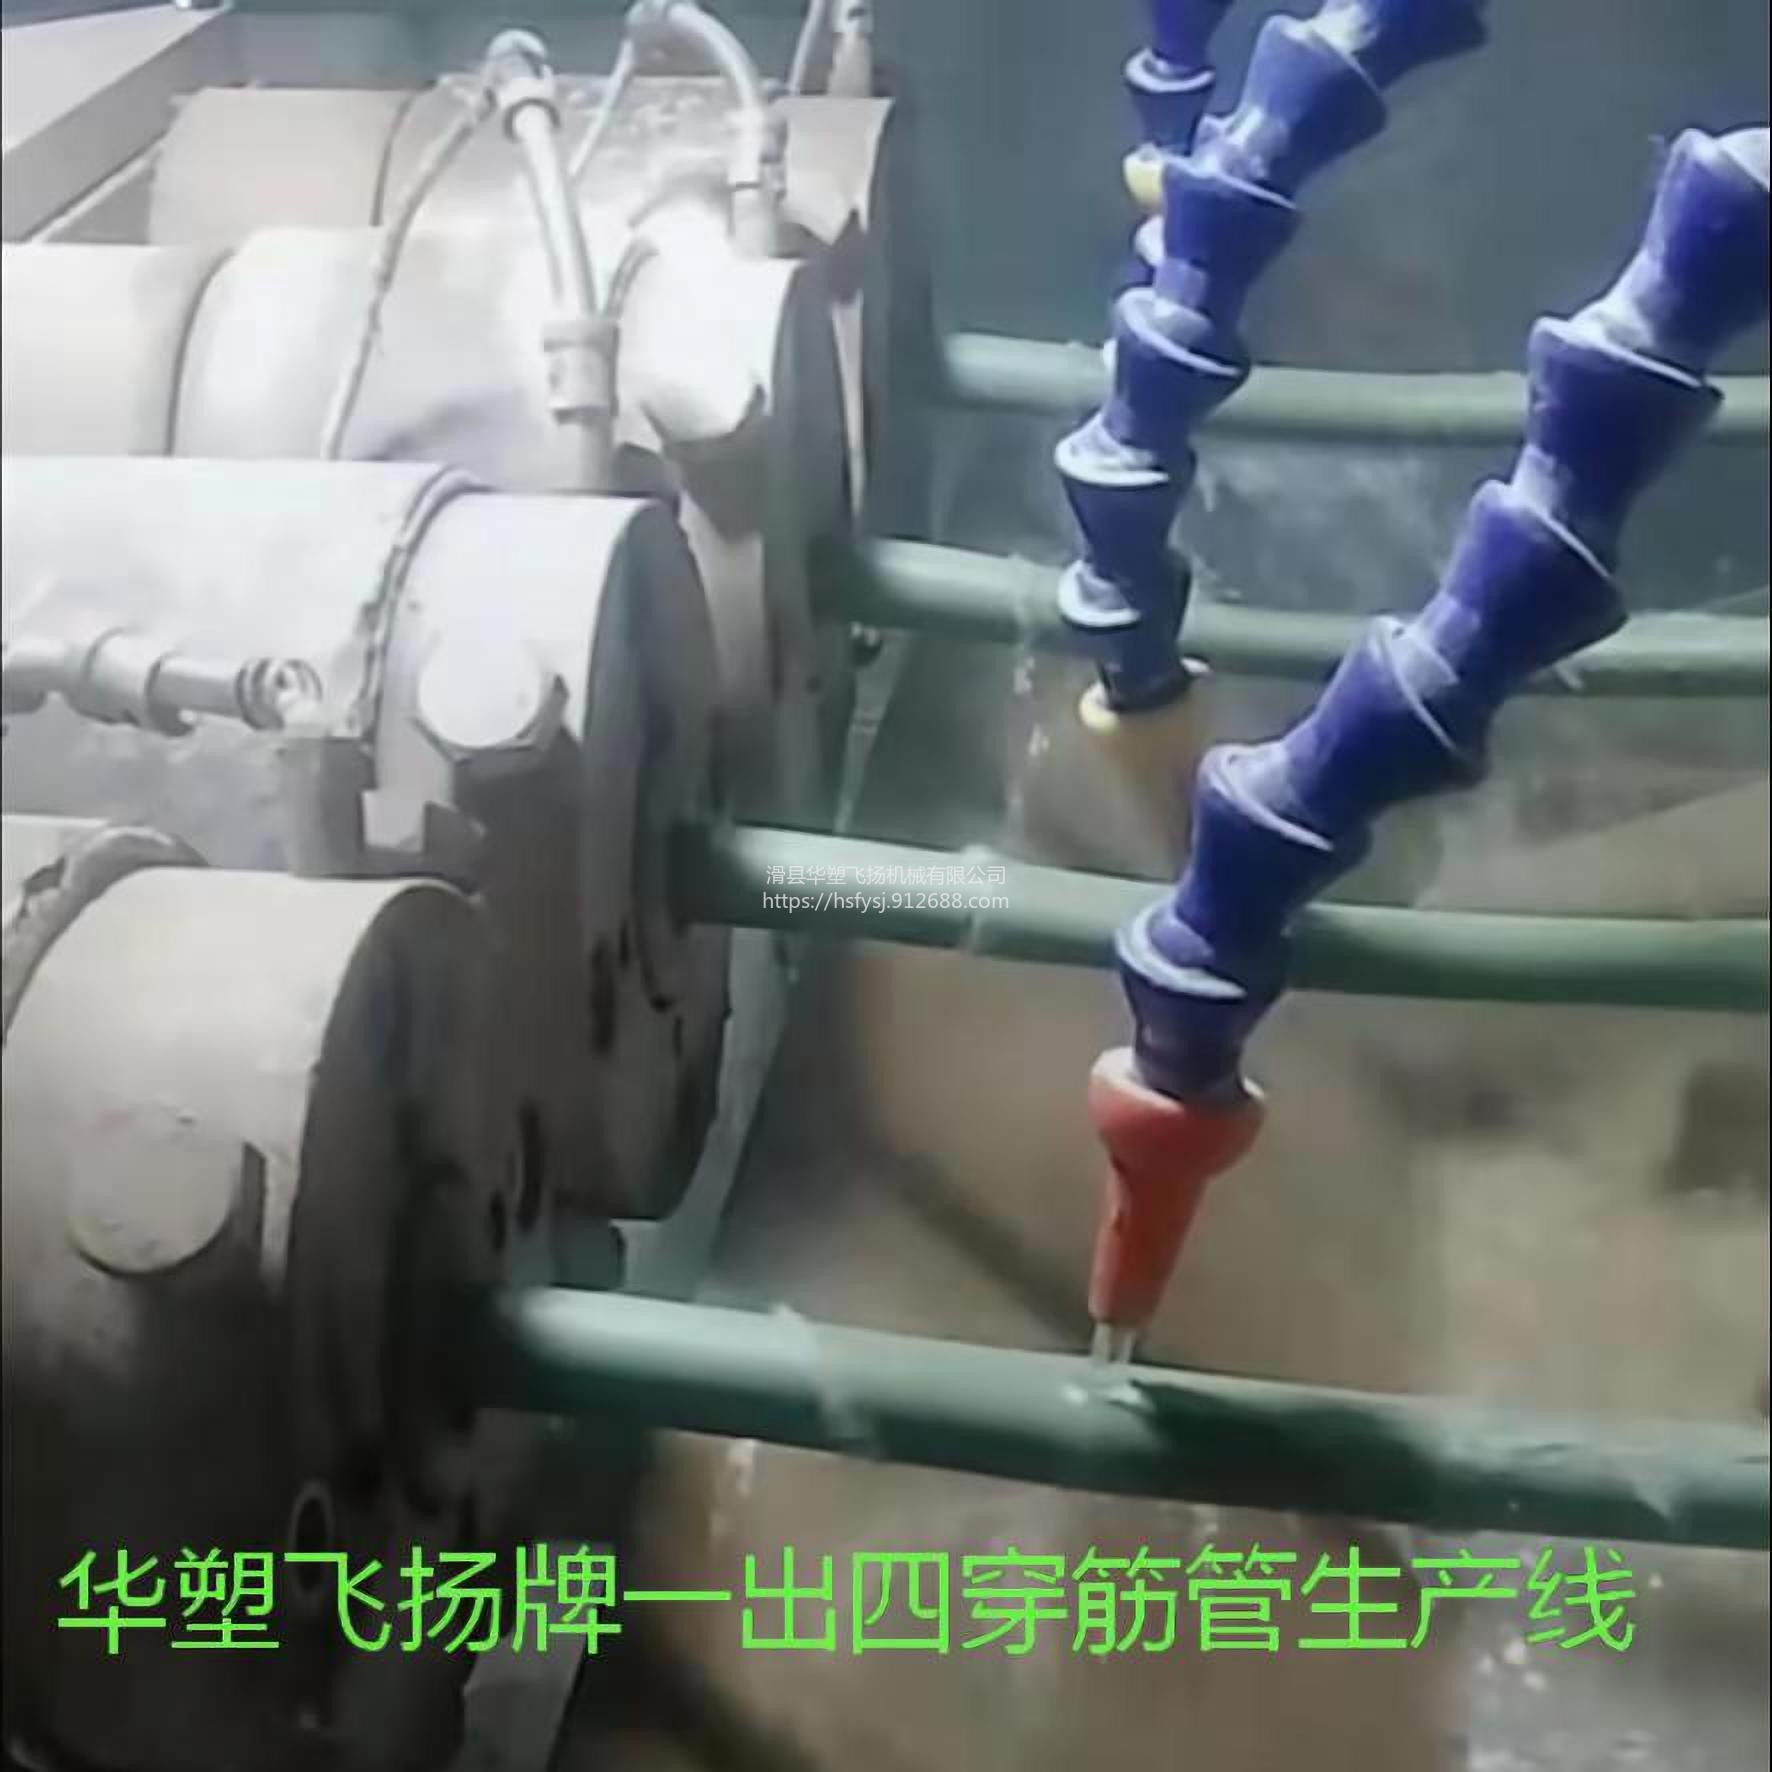 飞洋158 供PE管材挤出生产线 PVC管材挤出机组 塑料管材机器